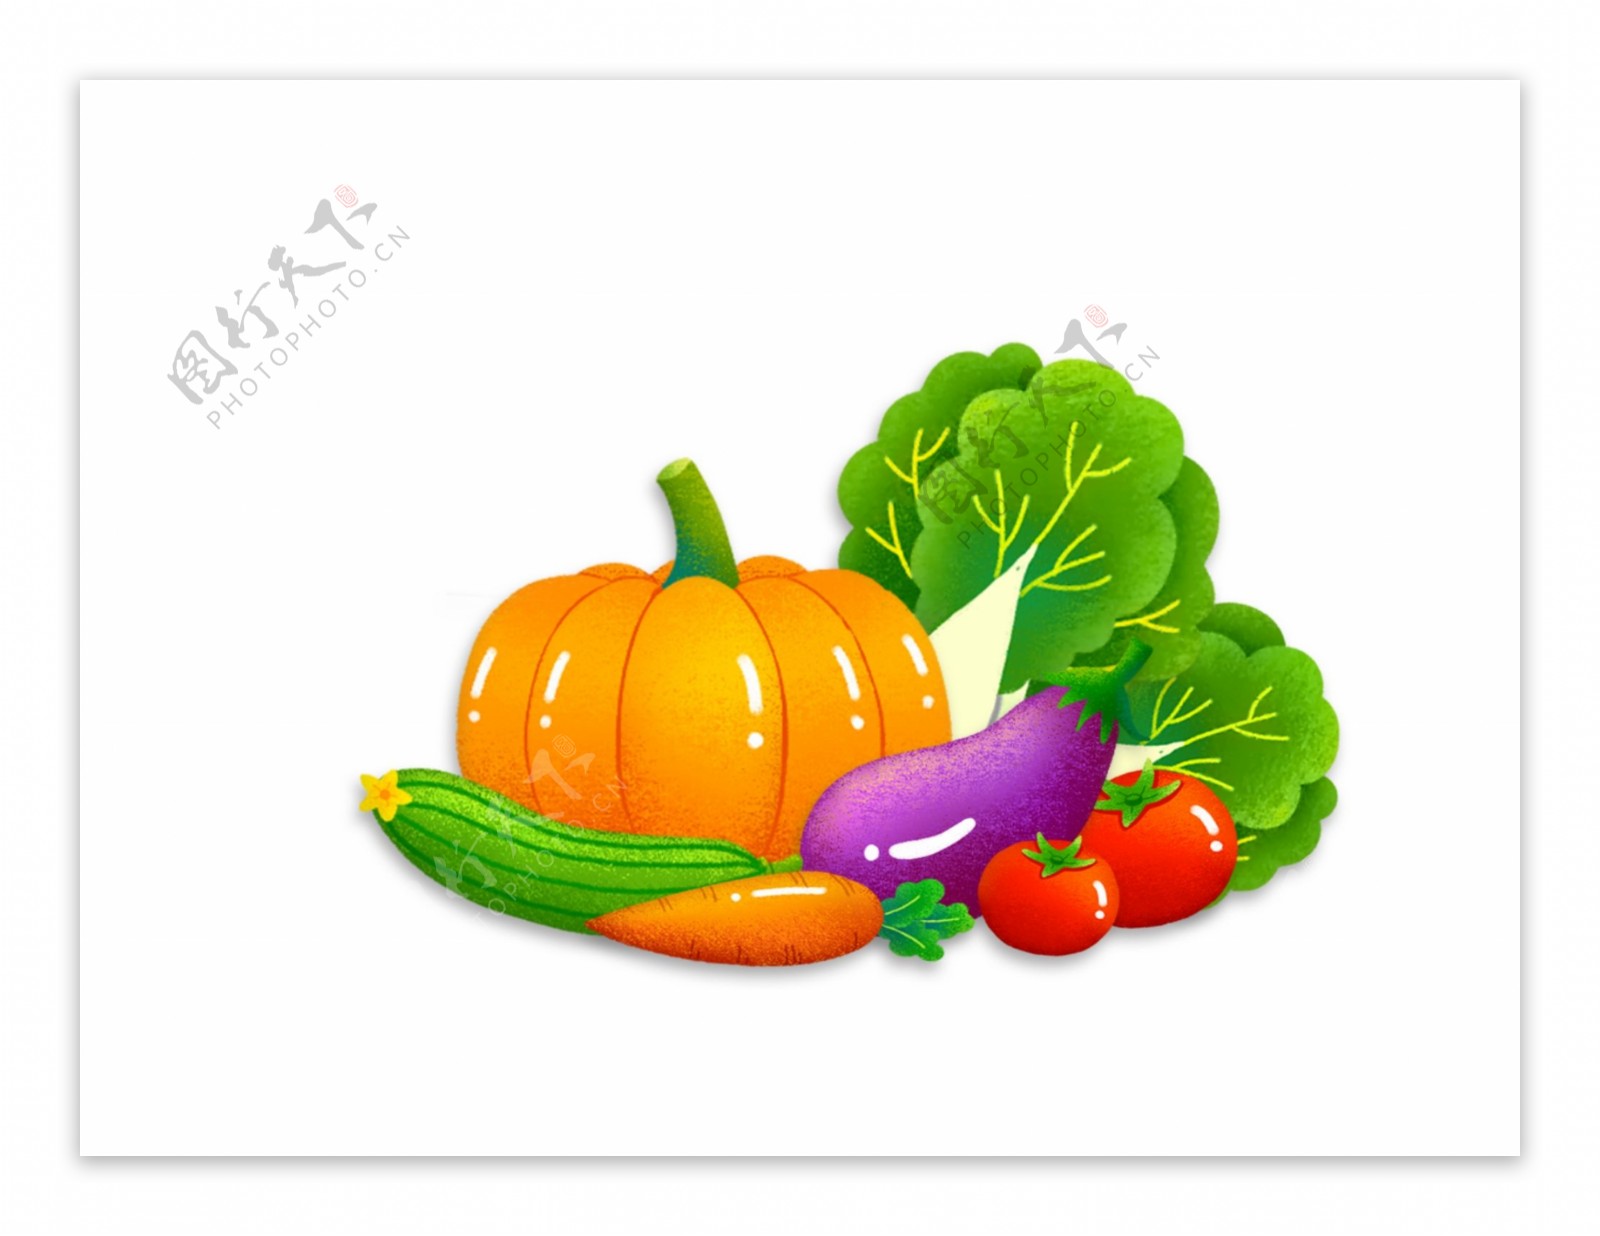 各种可样的卡通蔬菜图片素材免费下载 - 觅知网